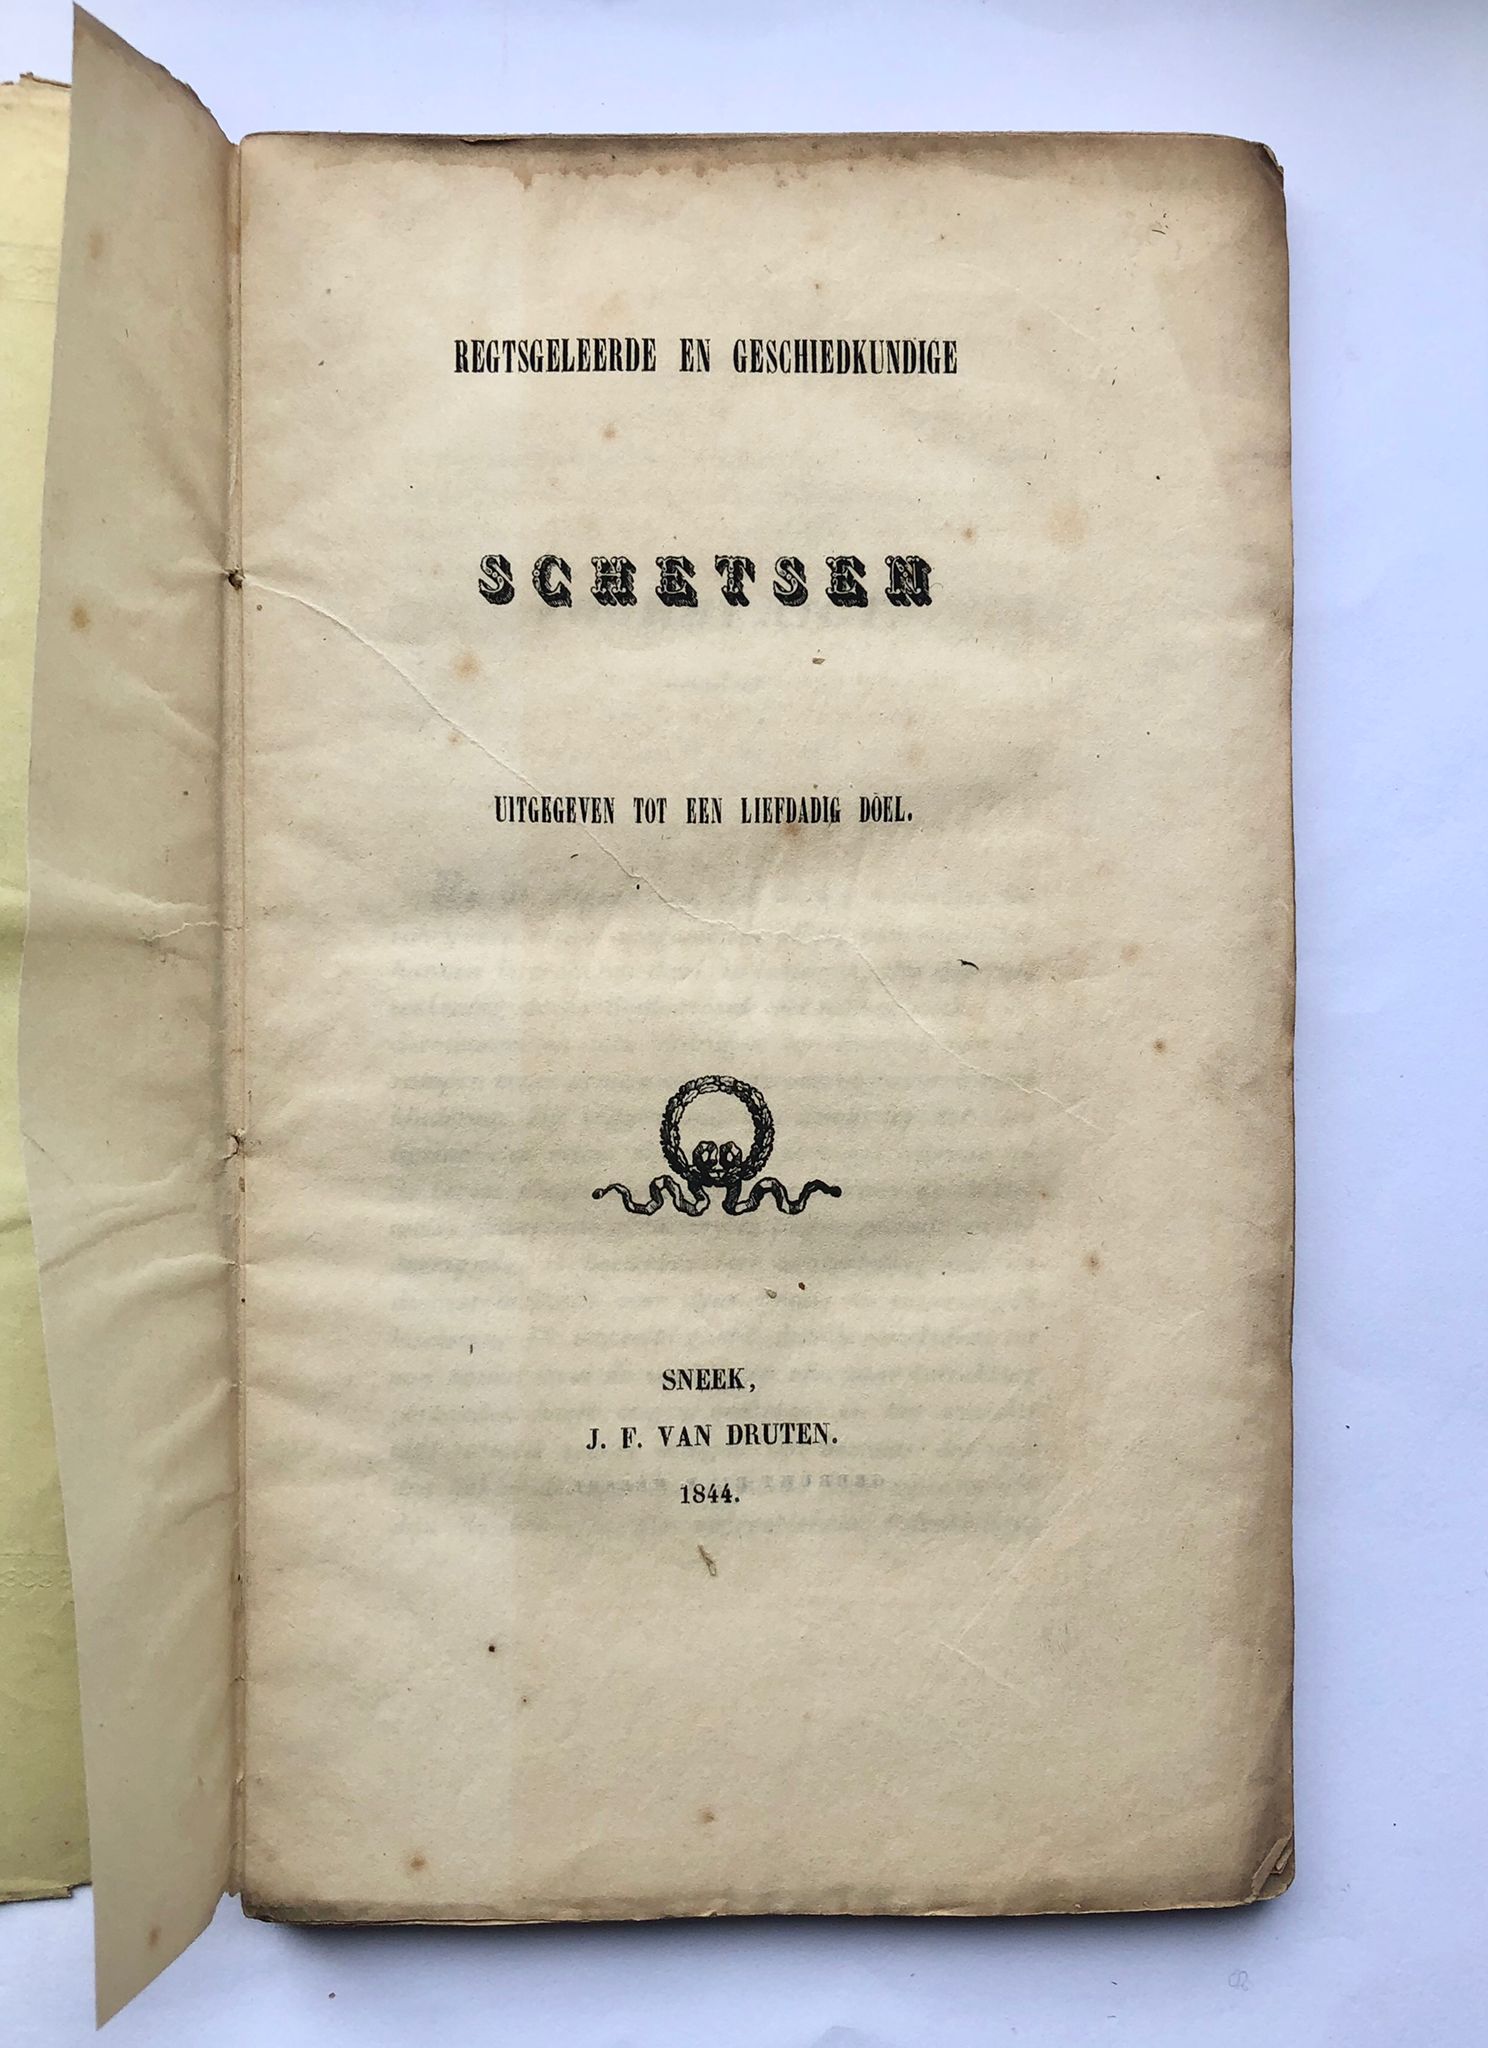 [Friesland, Sneek] Regtsgeleerde en geschiedkundige schetsen uitgegeven tot een liefdadig doel, J. F. van Druten, Sneek, 1844, 163 pp.